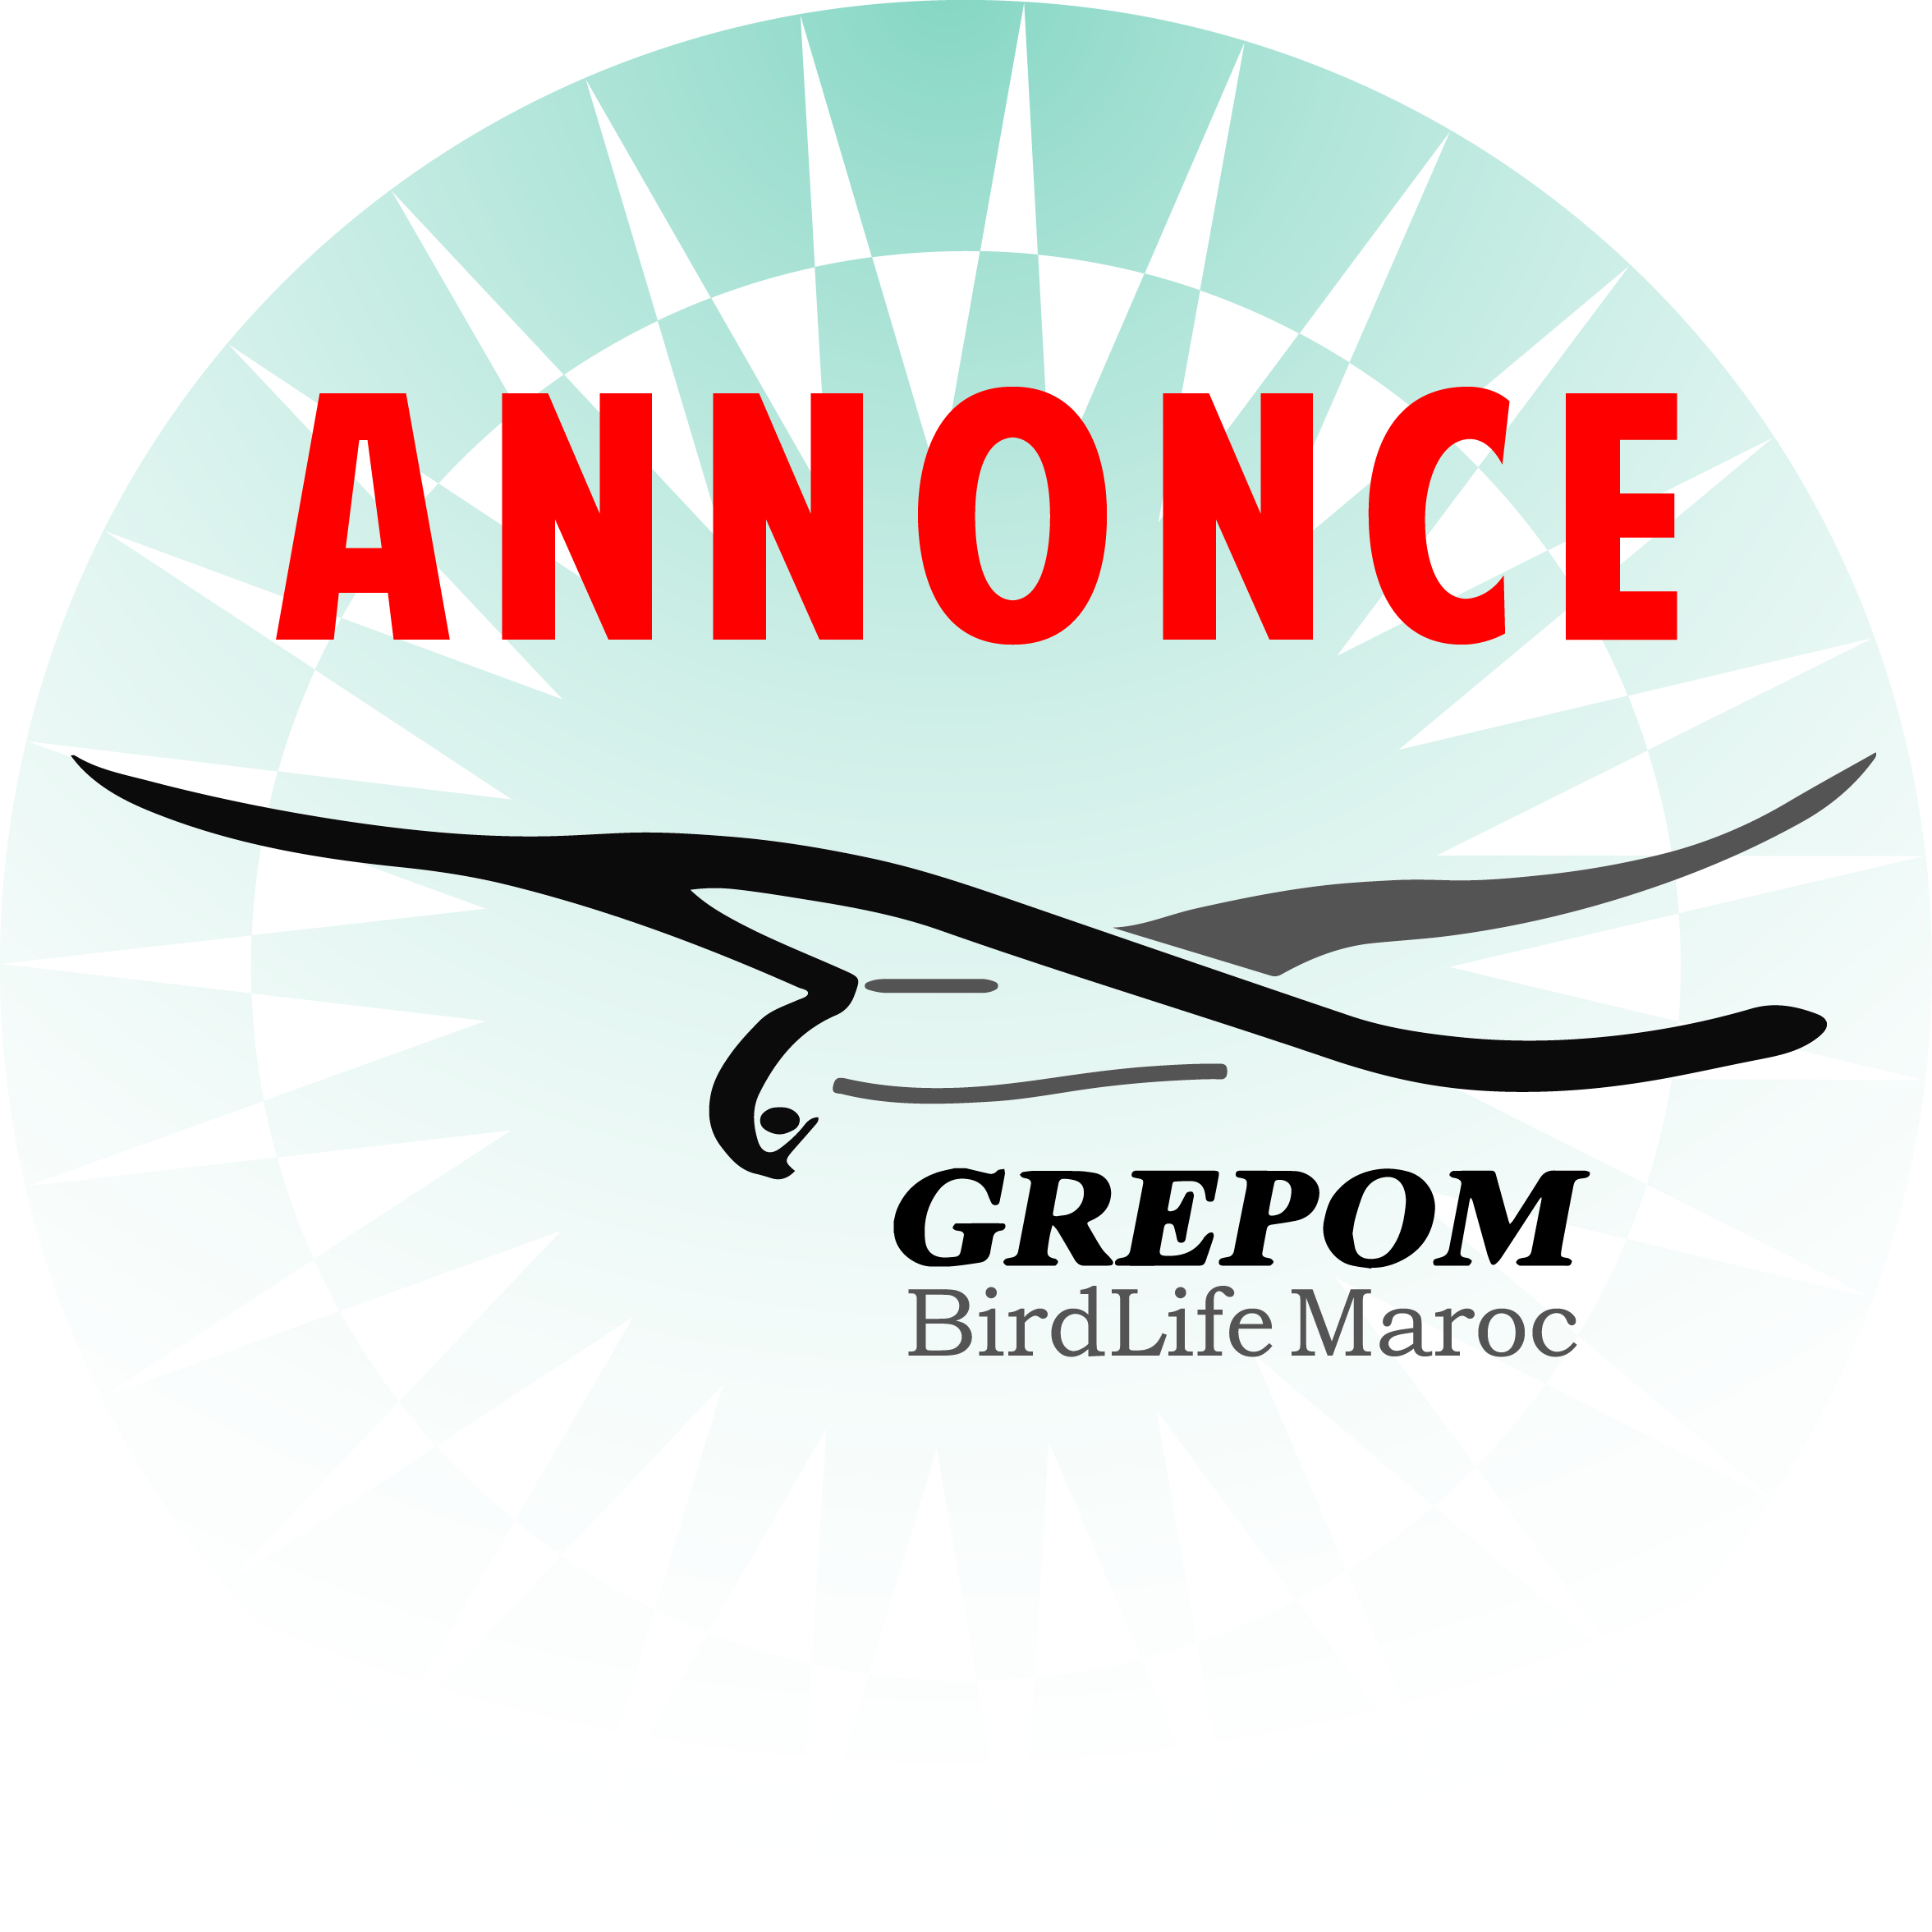 GREPOM coordonne la compagne de suivi de la migration de la Spatule Blanche